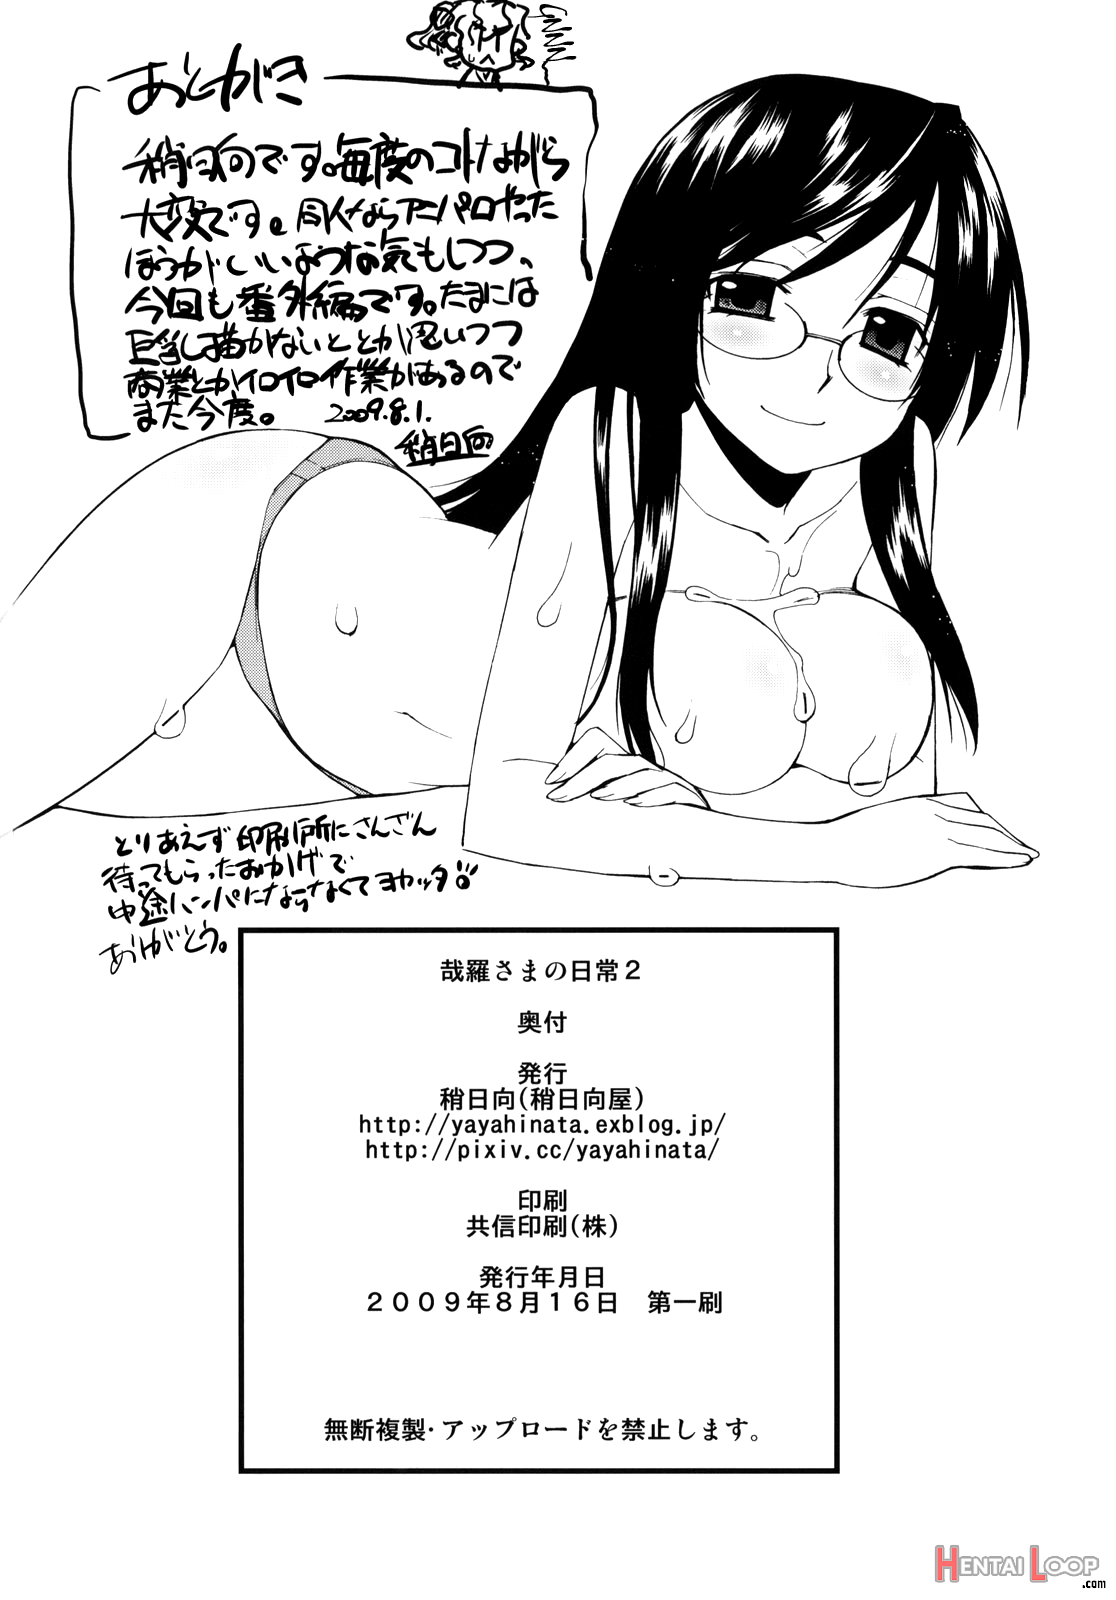 Kanara-sama No Nichijou 2 page 29